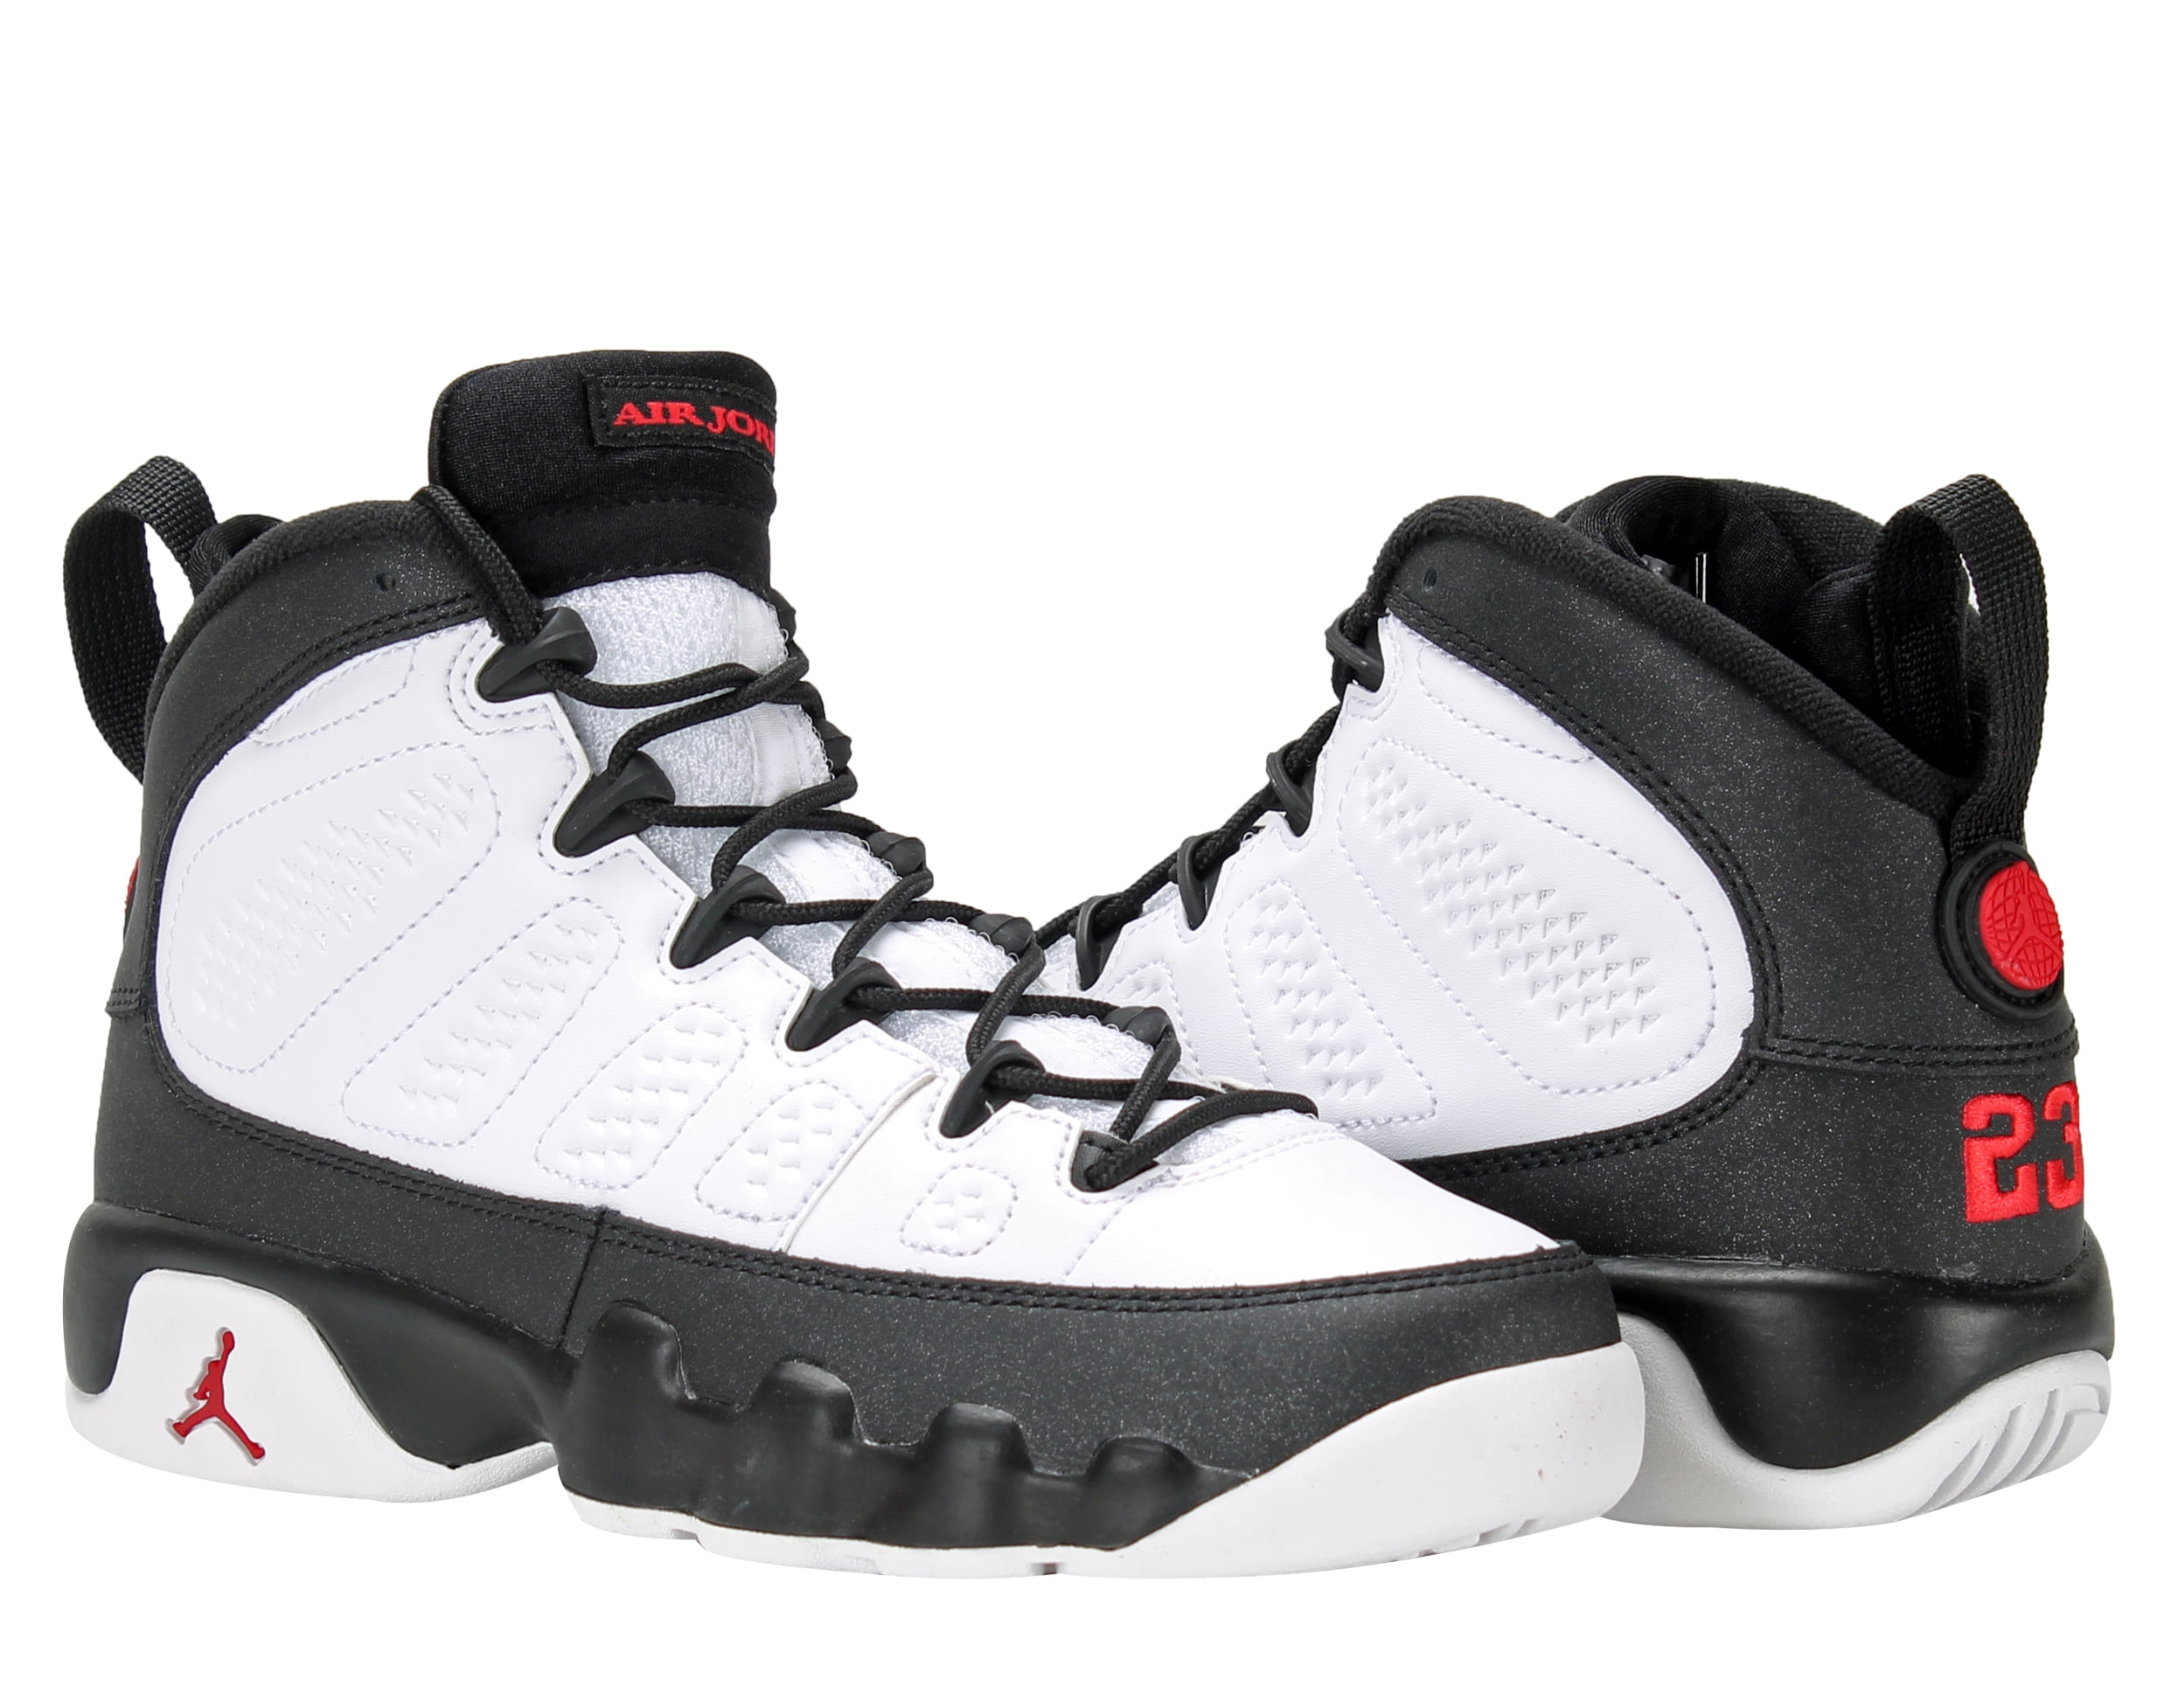 equivocado Cadera papa Nike Boys Air Jordan 9 Retro BG "Playoff" White/Red-Black 302359-112 -  Walmart.com